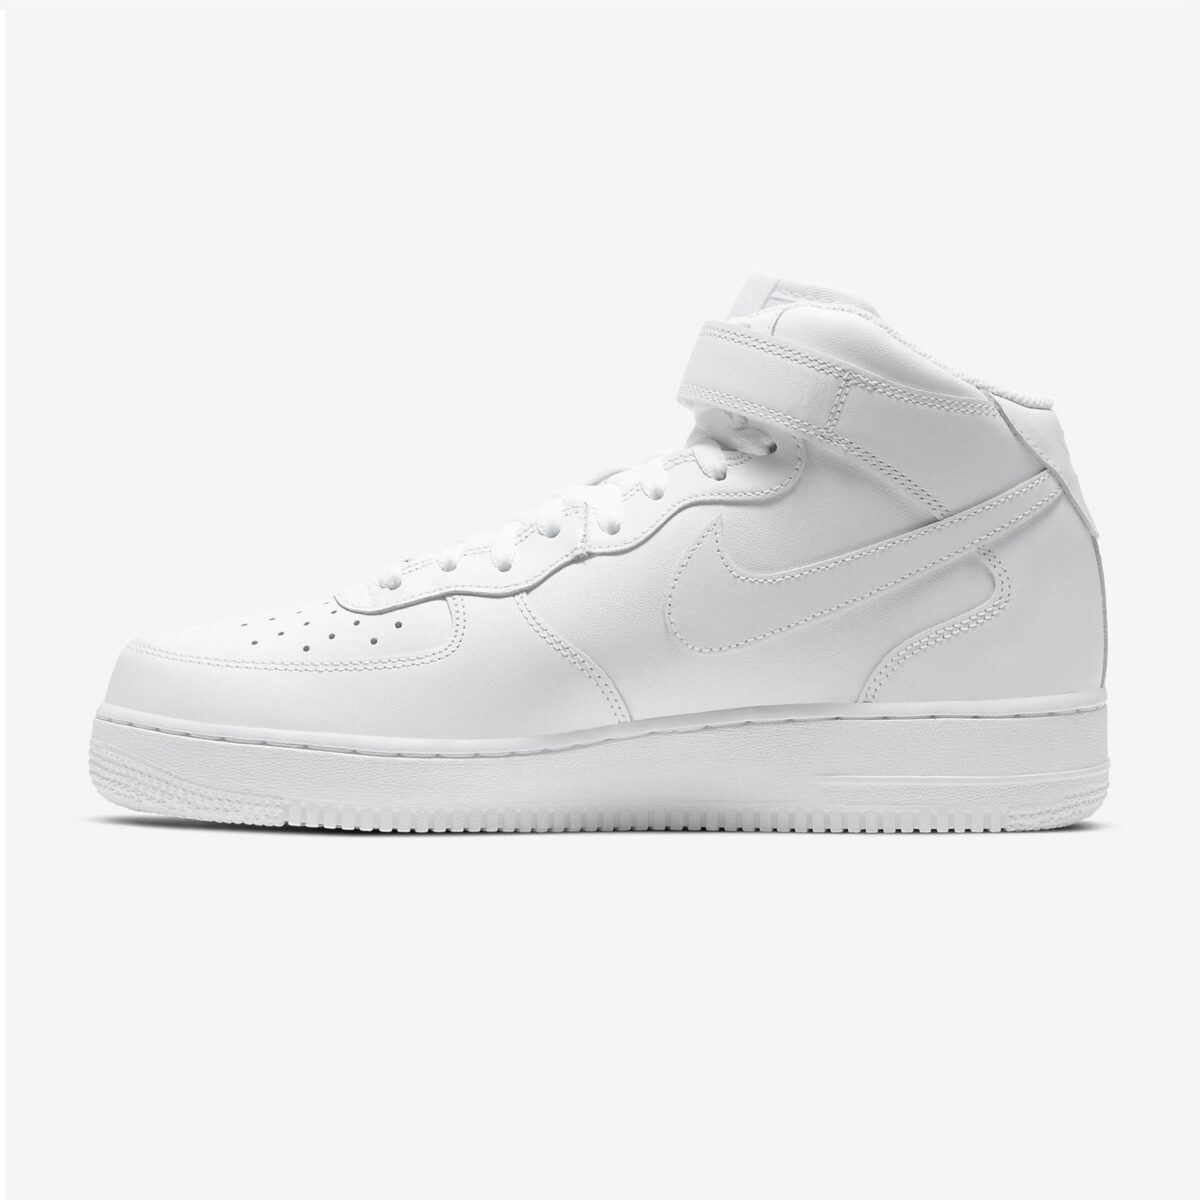 Herren Schuhe Nike Air Force 1 07 Mid weiß